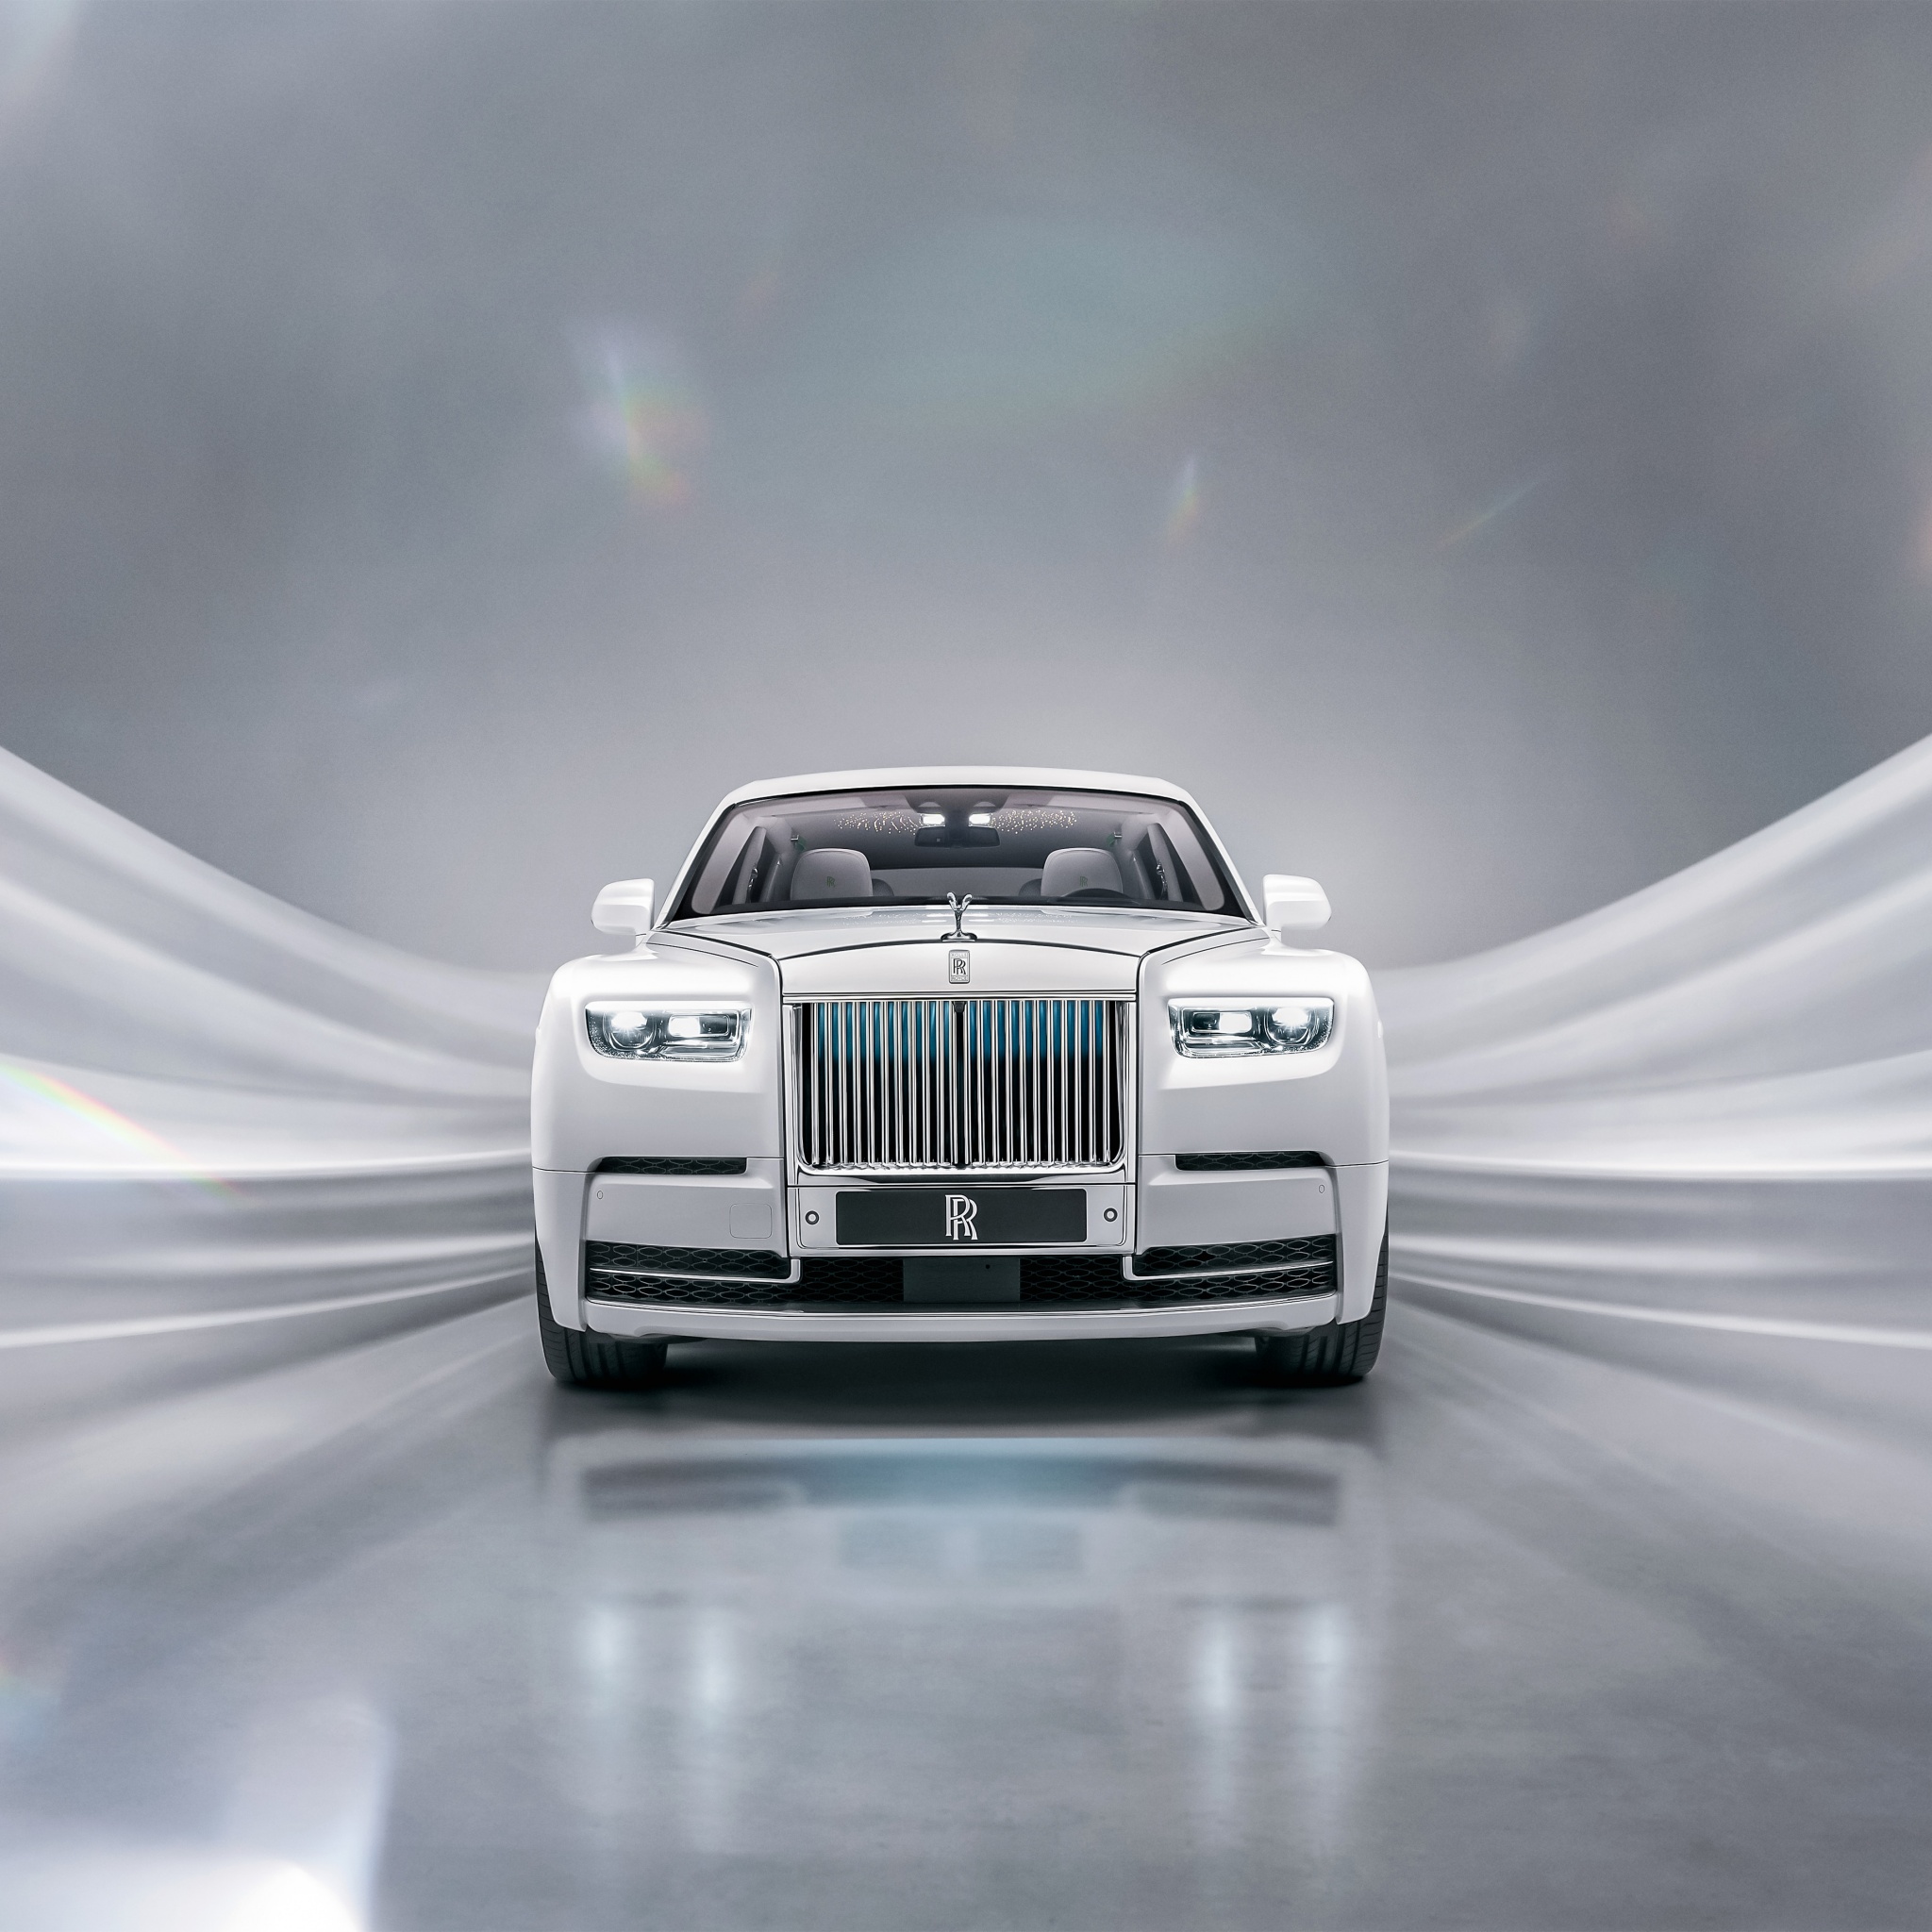 Rolls-Royce: Rolls-Royce không chỉ đơn thuần là một phương tiện di chuyển, đó còn là biểu tượng của đẳng cấp và đẳng quyền. Cùng chiêm ngưỡng những hình ảnh liên quan đến Rolls-Royce để thấy được sự ấn tượng và chất lượng của thương hiệu này. 